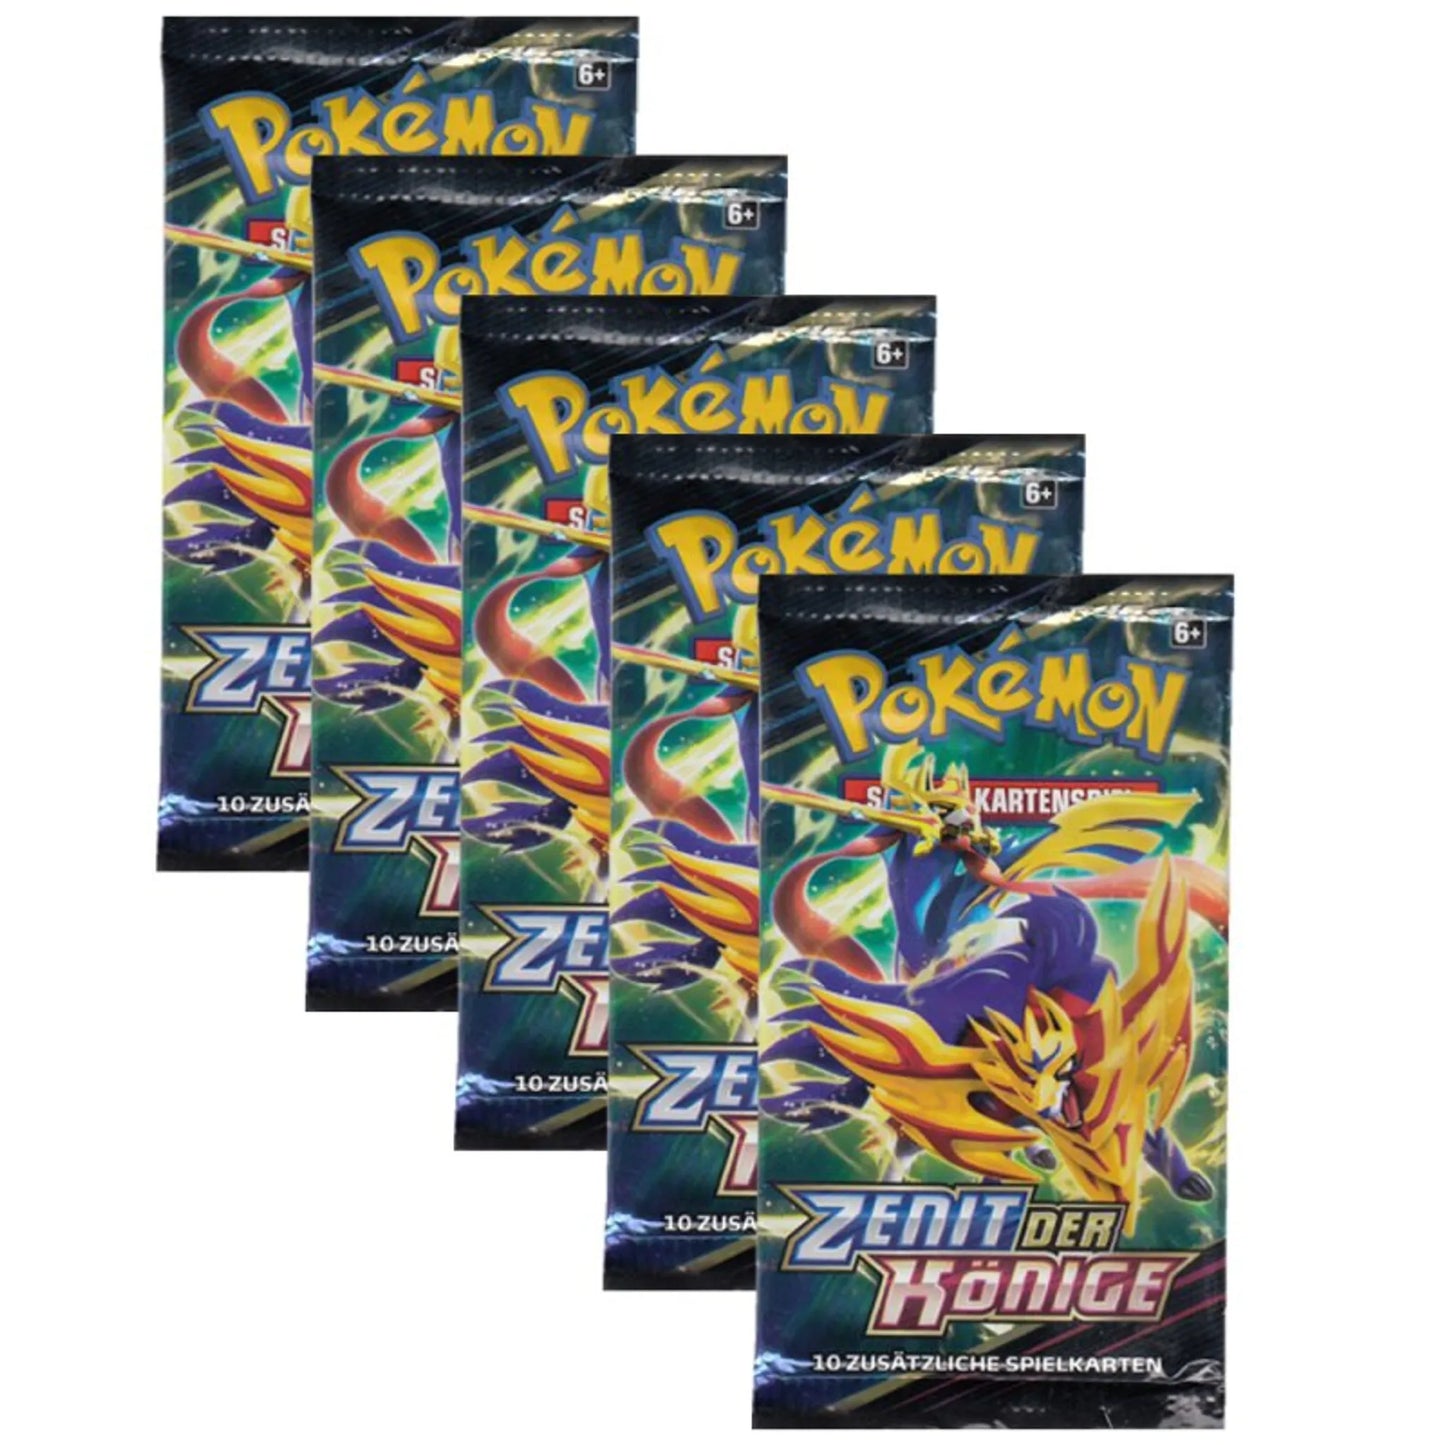 Pokemon - SWSH12.5 Zenit der Könige - 5 Booster Packs - Deutsch